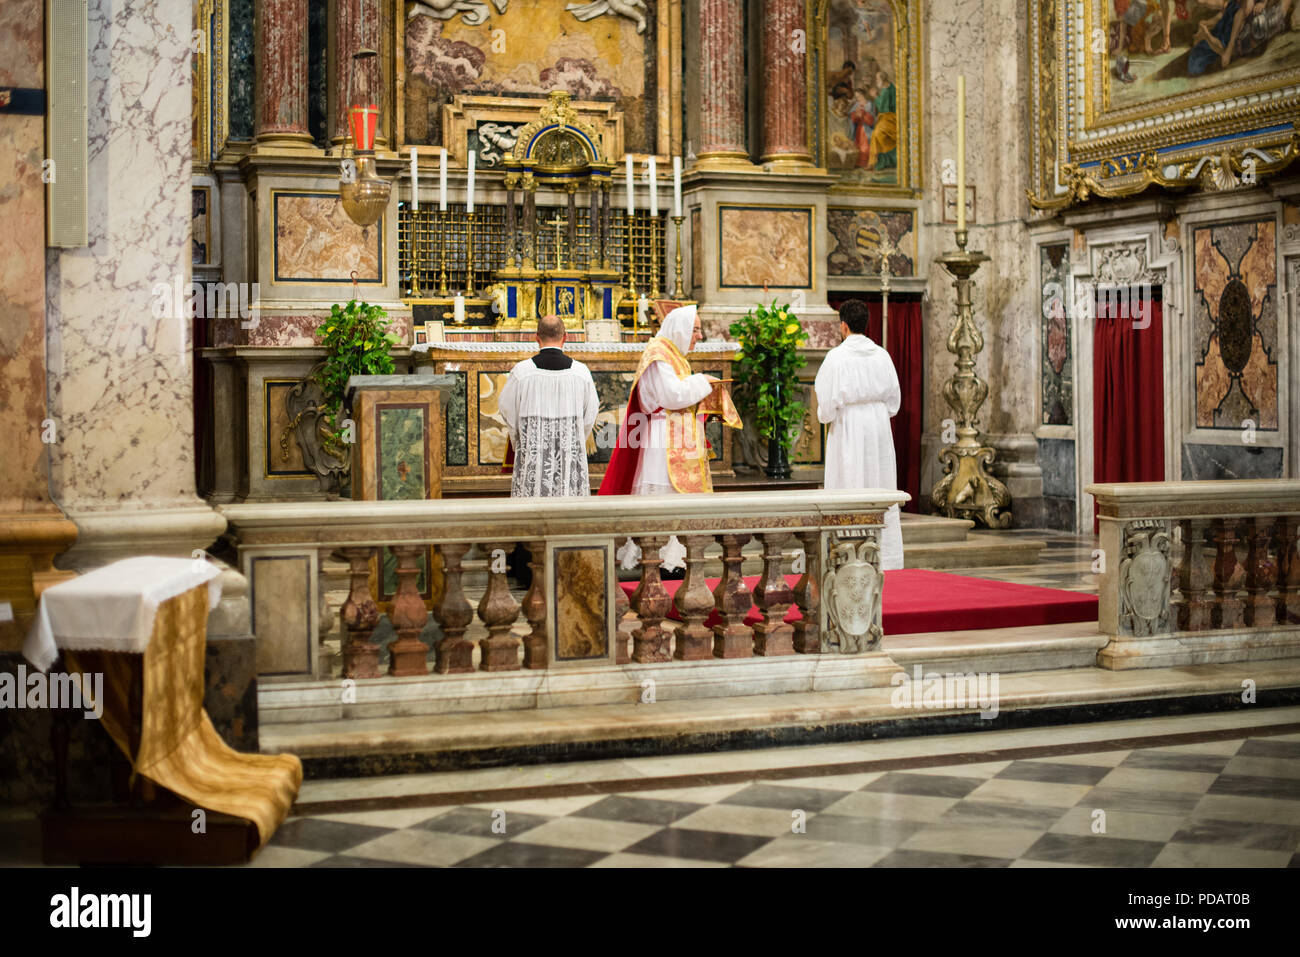 Roma - 7 Settembre 2017 - La celebrazione della Santa Messa vetus ordo, Messa in latino, nei giorni del pellegrinaggio Summorum pontificum decennale. Foto Stock